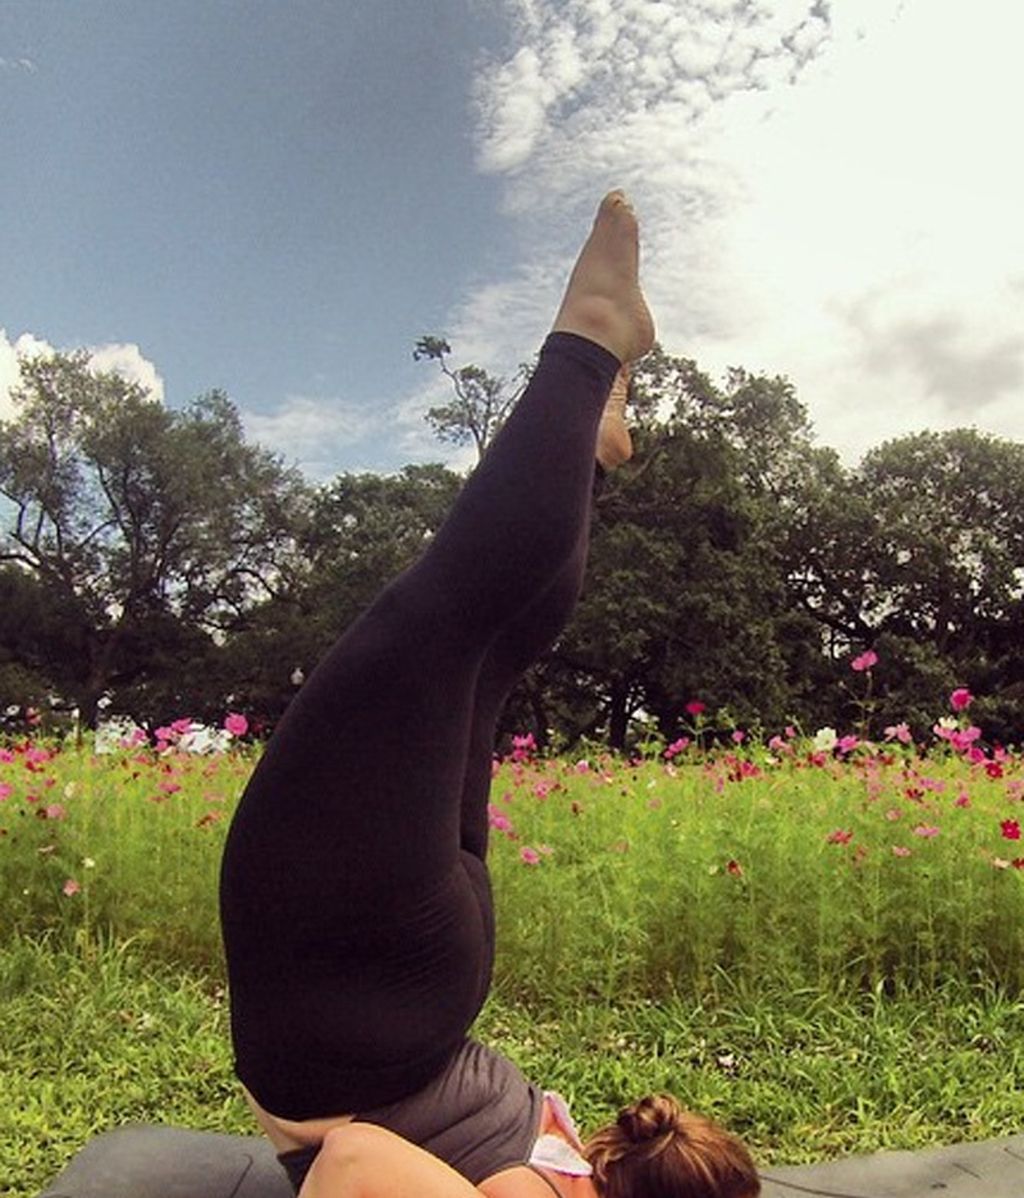 "El yoga me ayudó a quererme de nuevo"